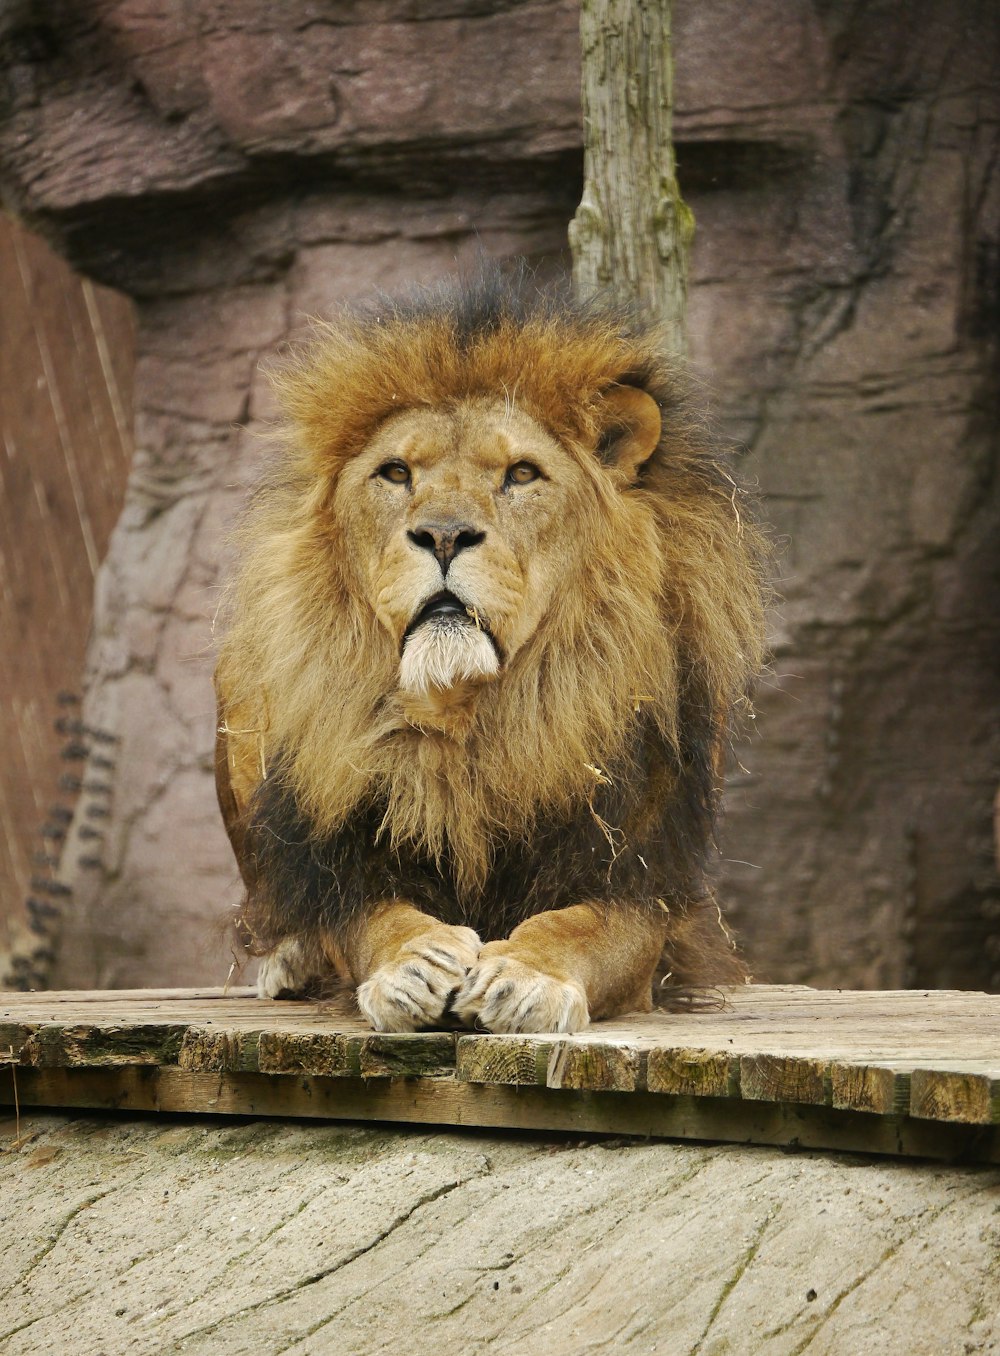 동물원의 난간에 앉아 있는 사자